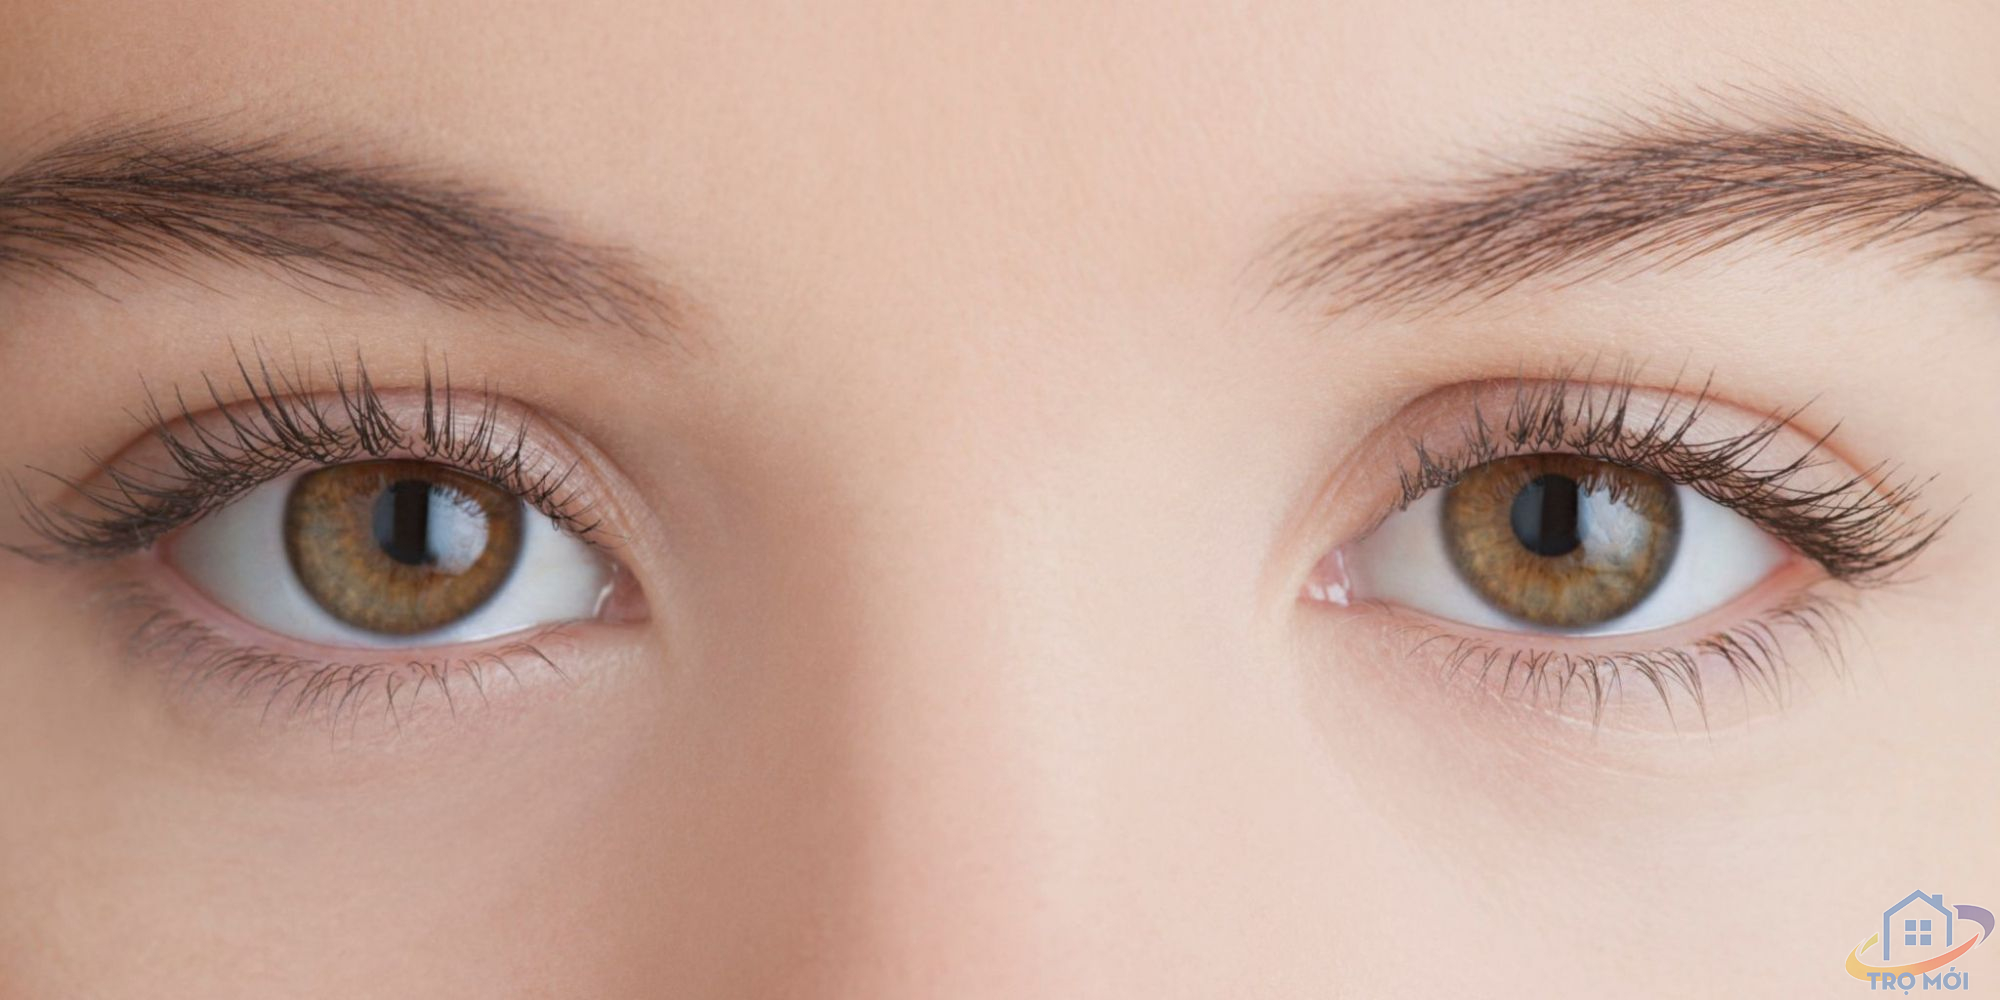 Tuyệt chiêu hồi phục sức khỏe cho mắt sau kỳ thi căng thẳng